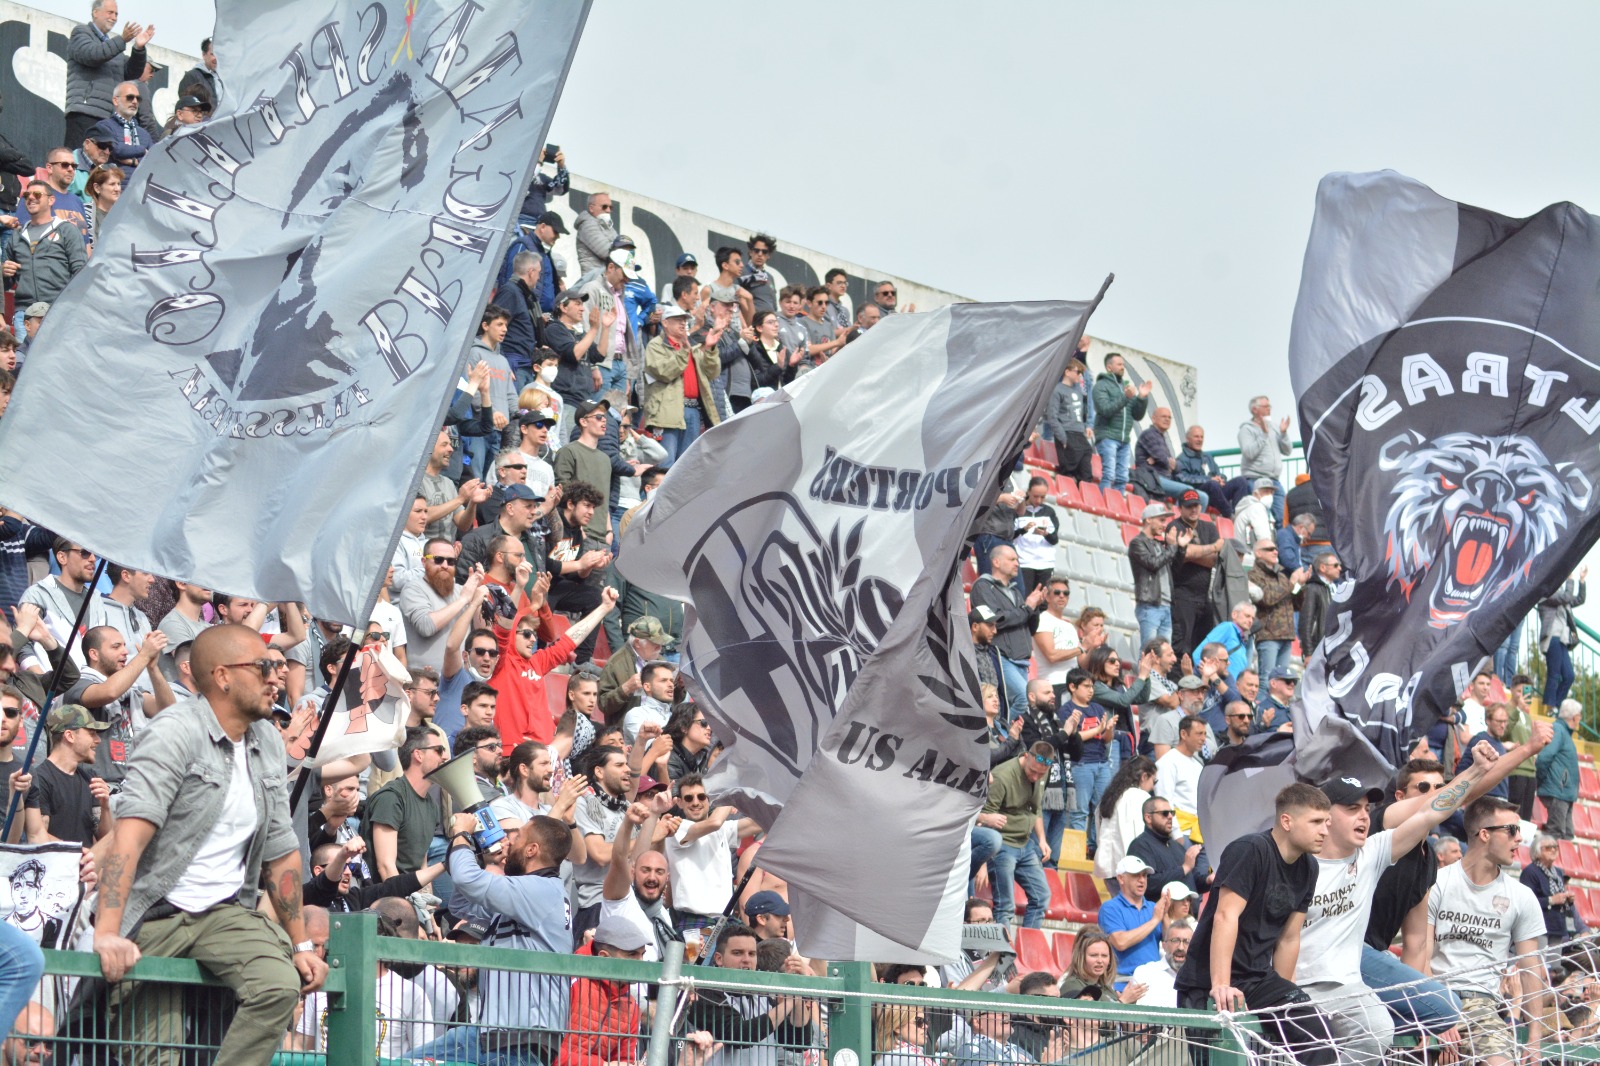 Alessandria Calcio, Gradinata Nord: “Mai vicini a idee o contenuti razzisti. Accusa infamante”